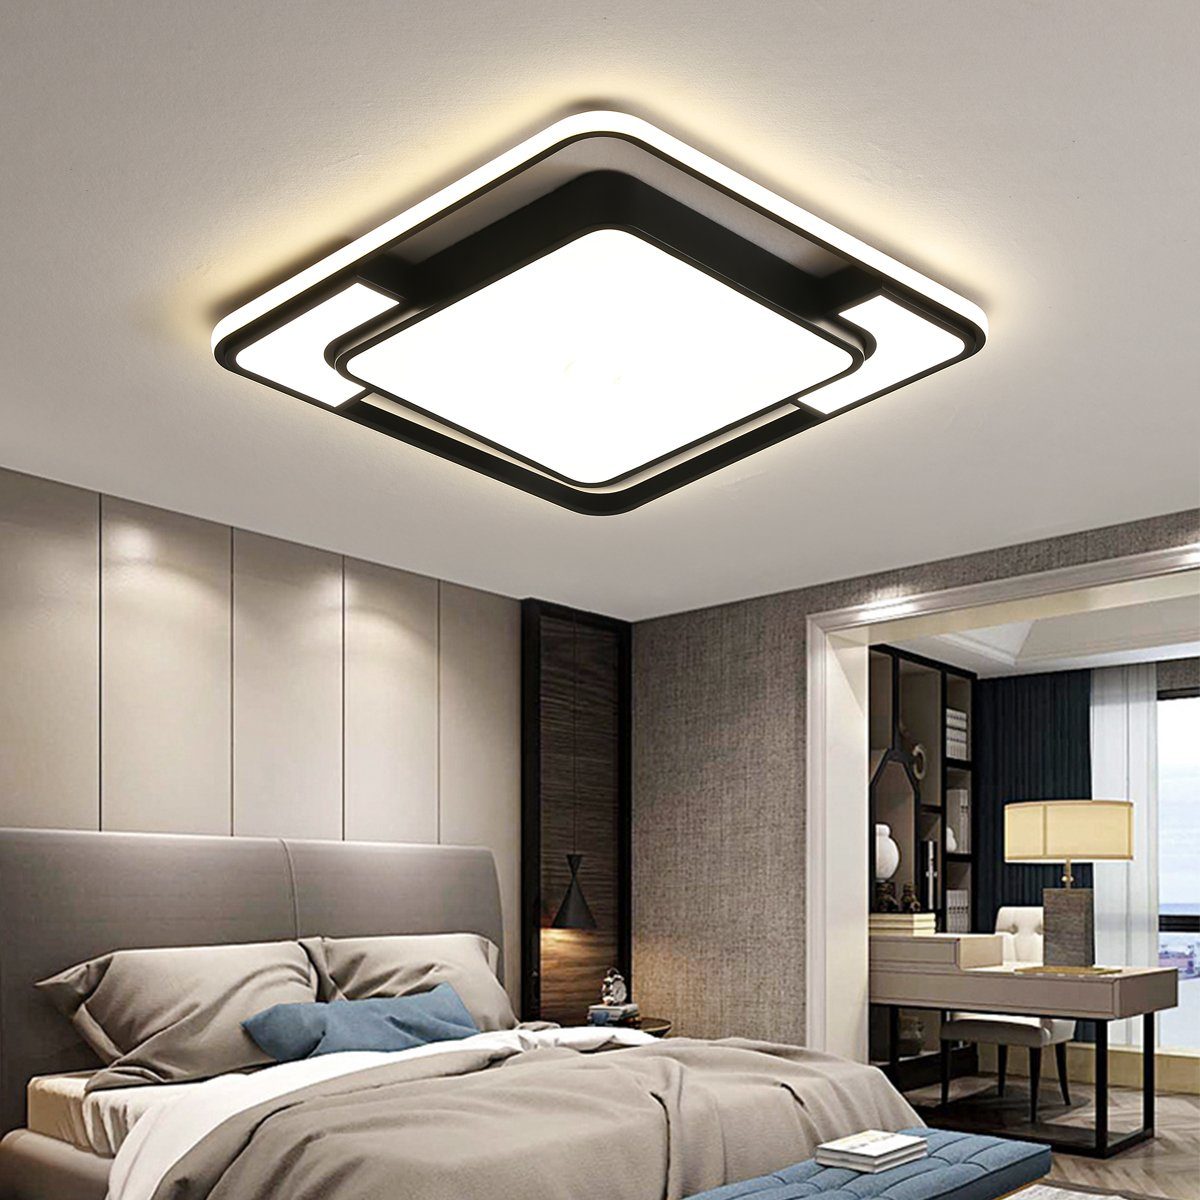 LED Design Decken Leuchte Wohn Ess Zimmer Lampe Flur Badezimmer Beleuchtung WOFI 